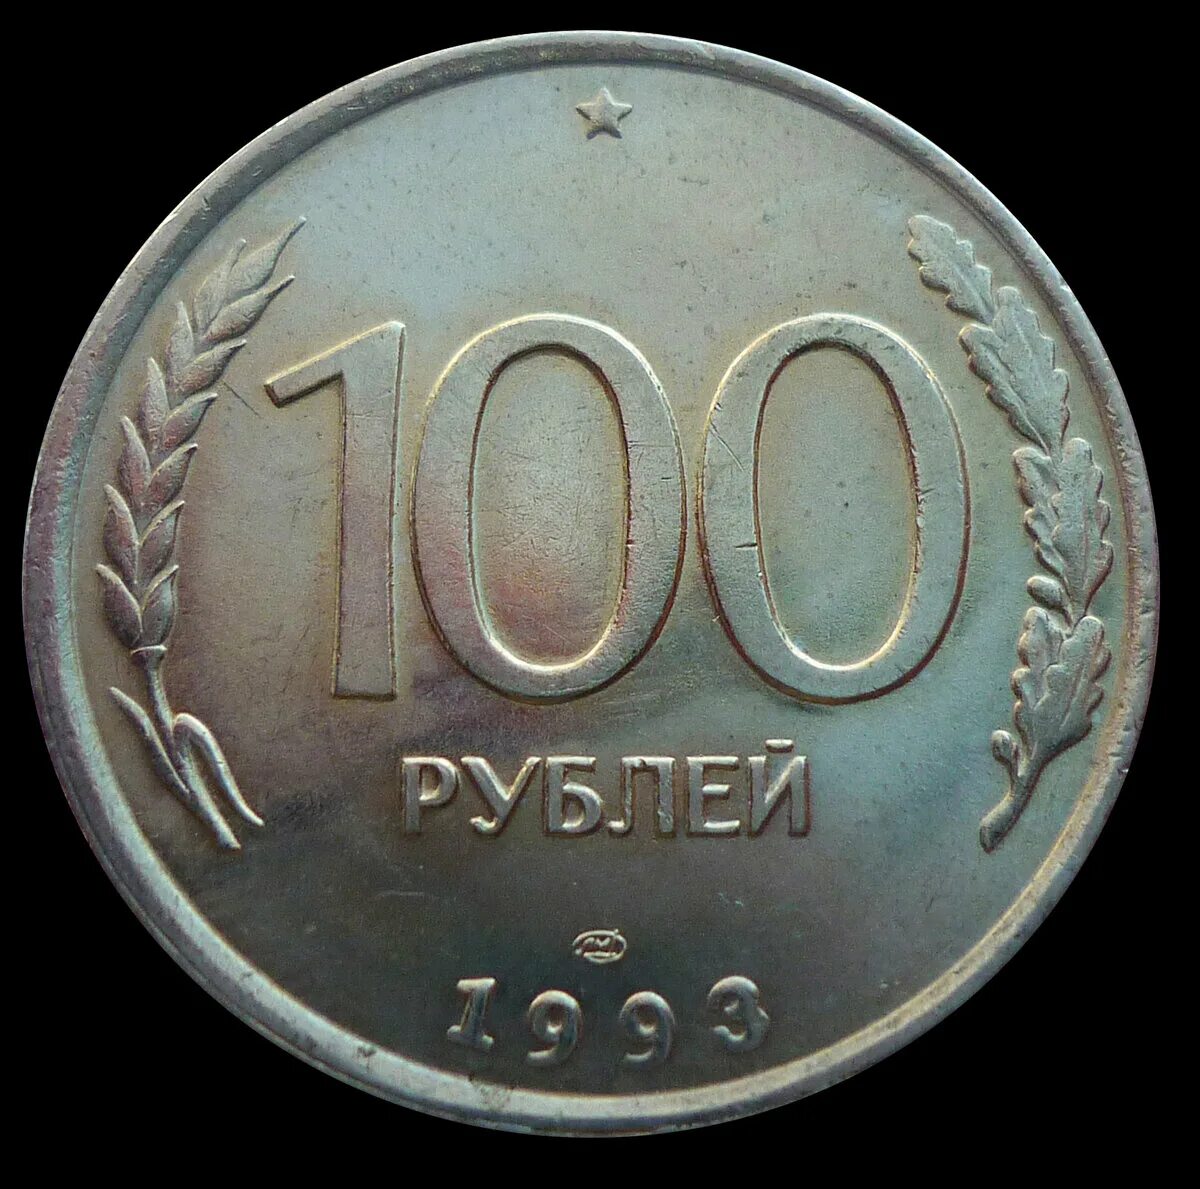 Продам рубли россии. 100 Рублей 1993 года. Монеты 1993 года. 100 Руб СССР монета. Рубли 1993.